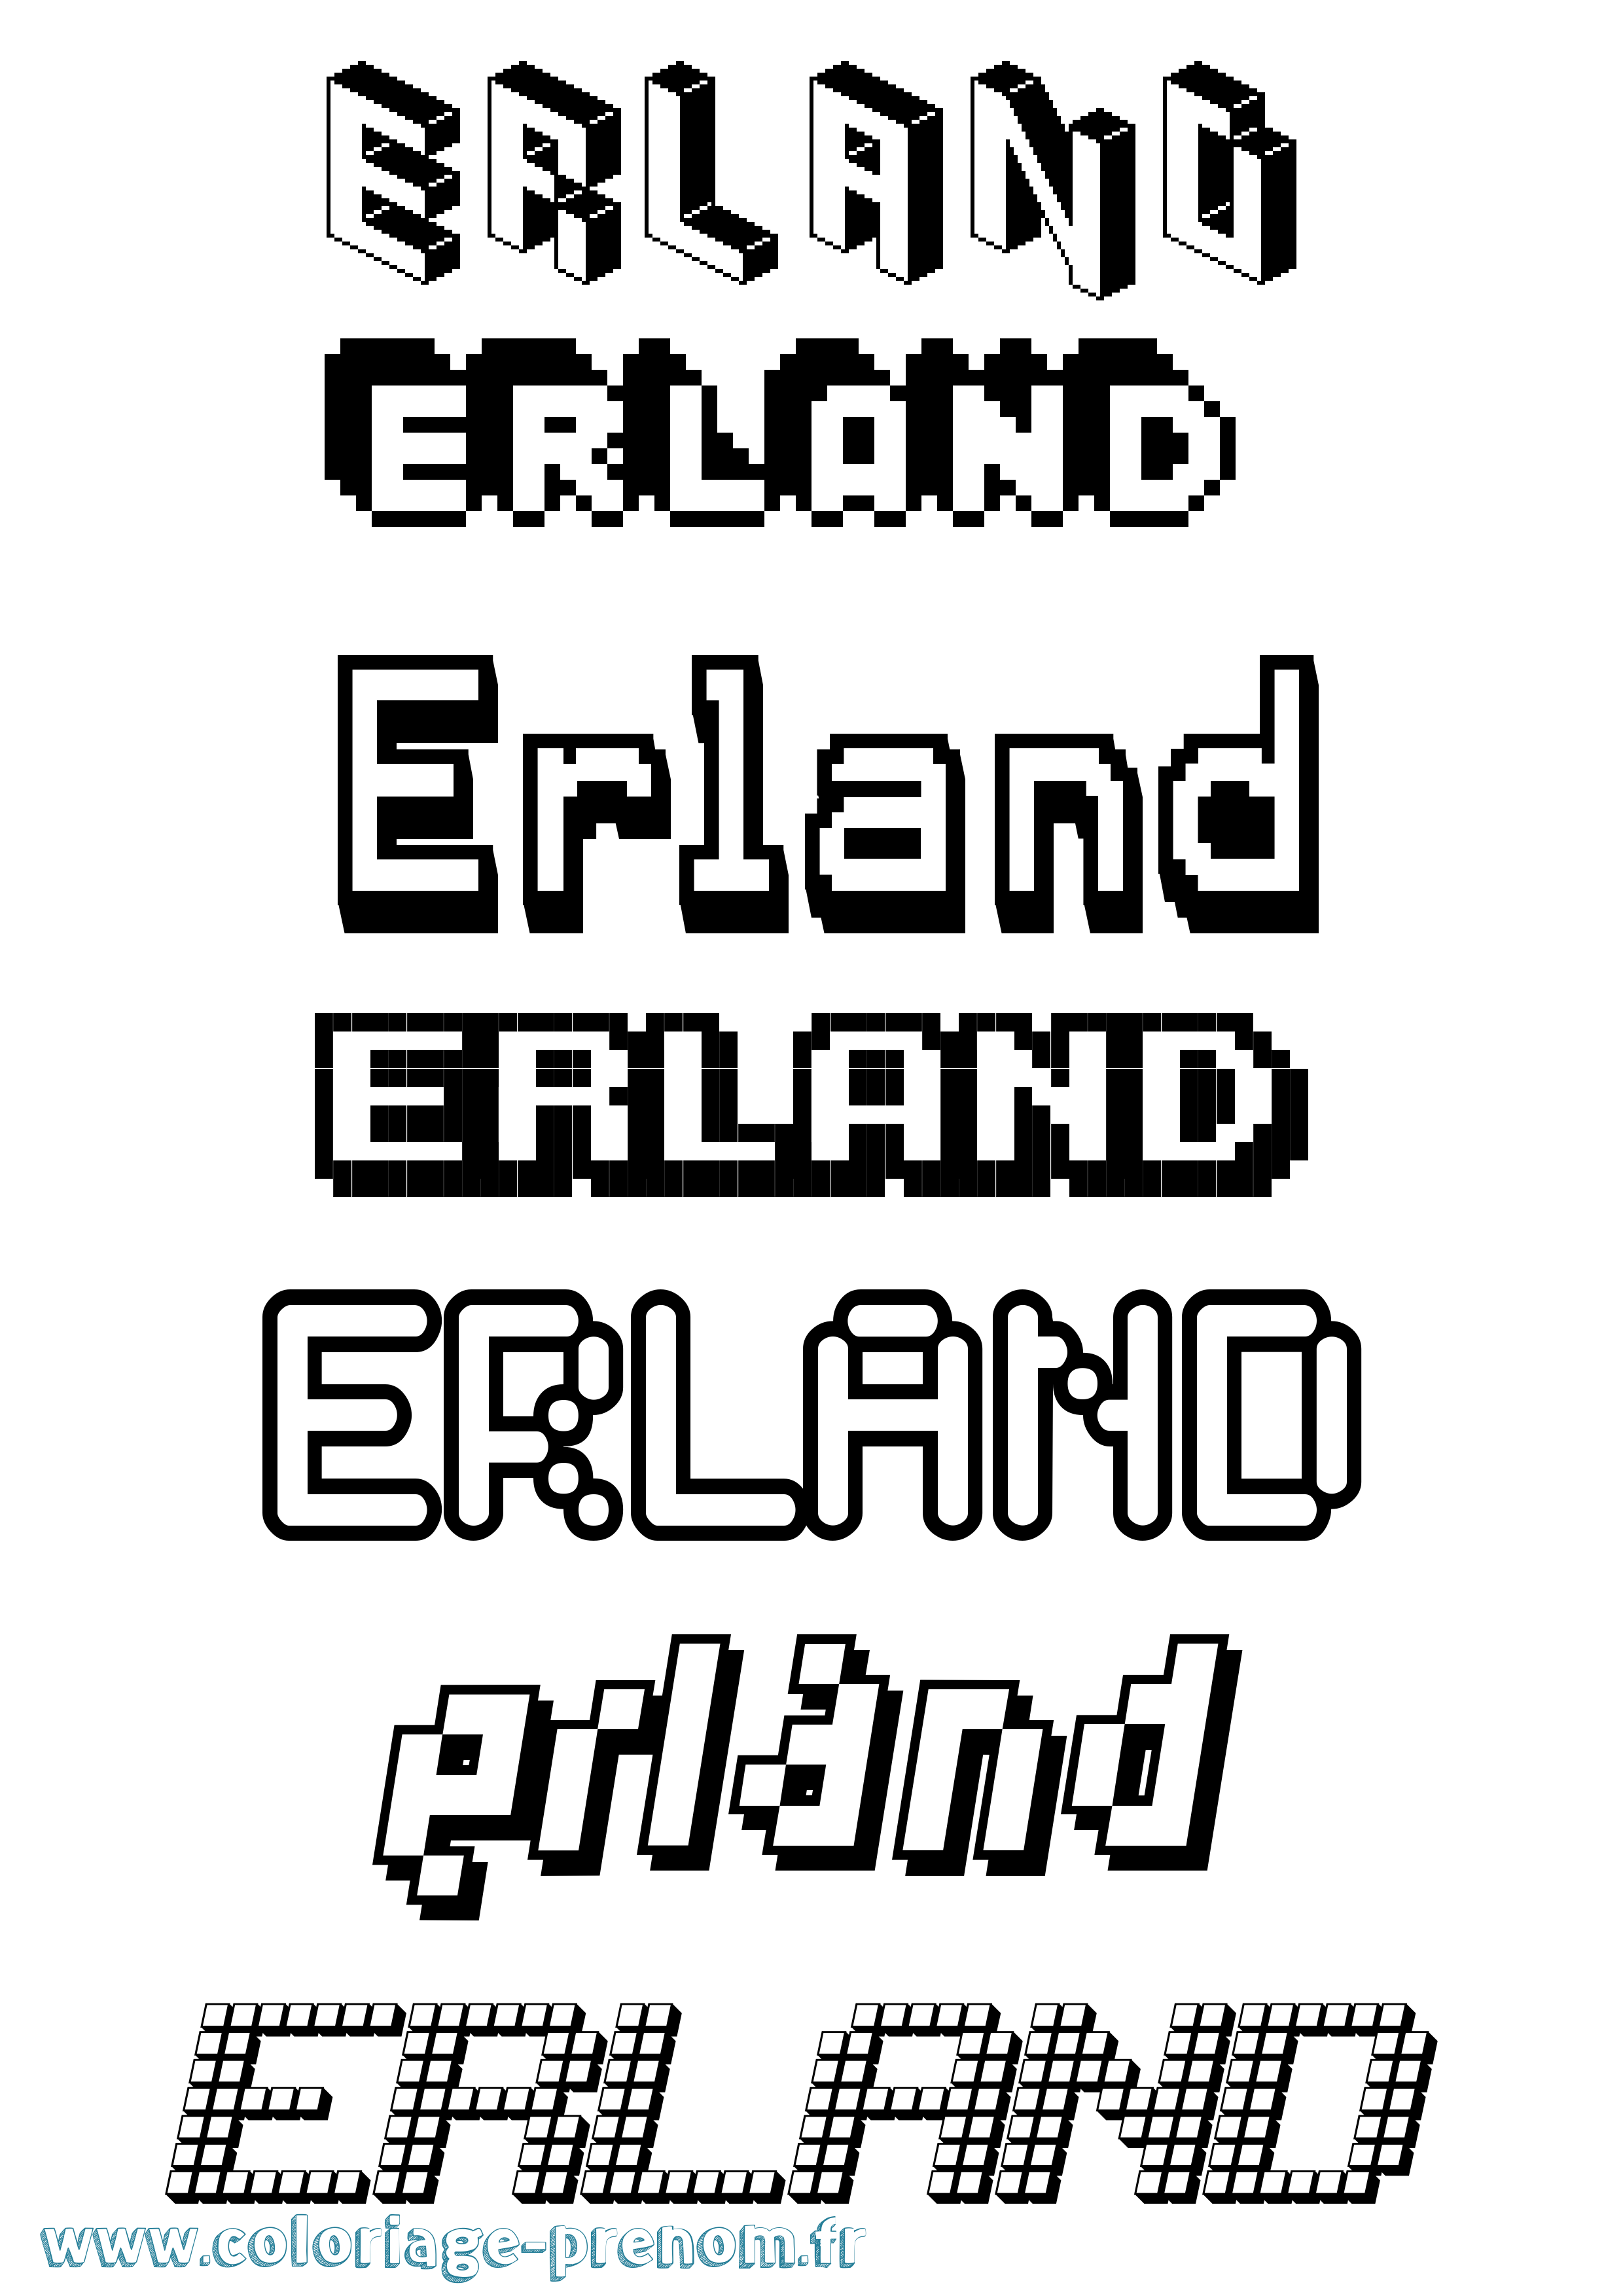 Coloriage prénom Erland Pixel